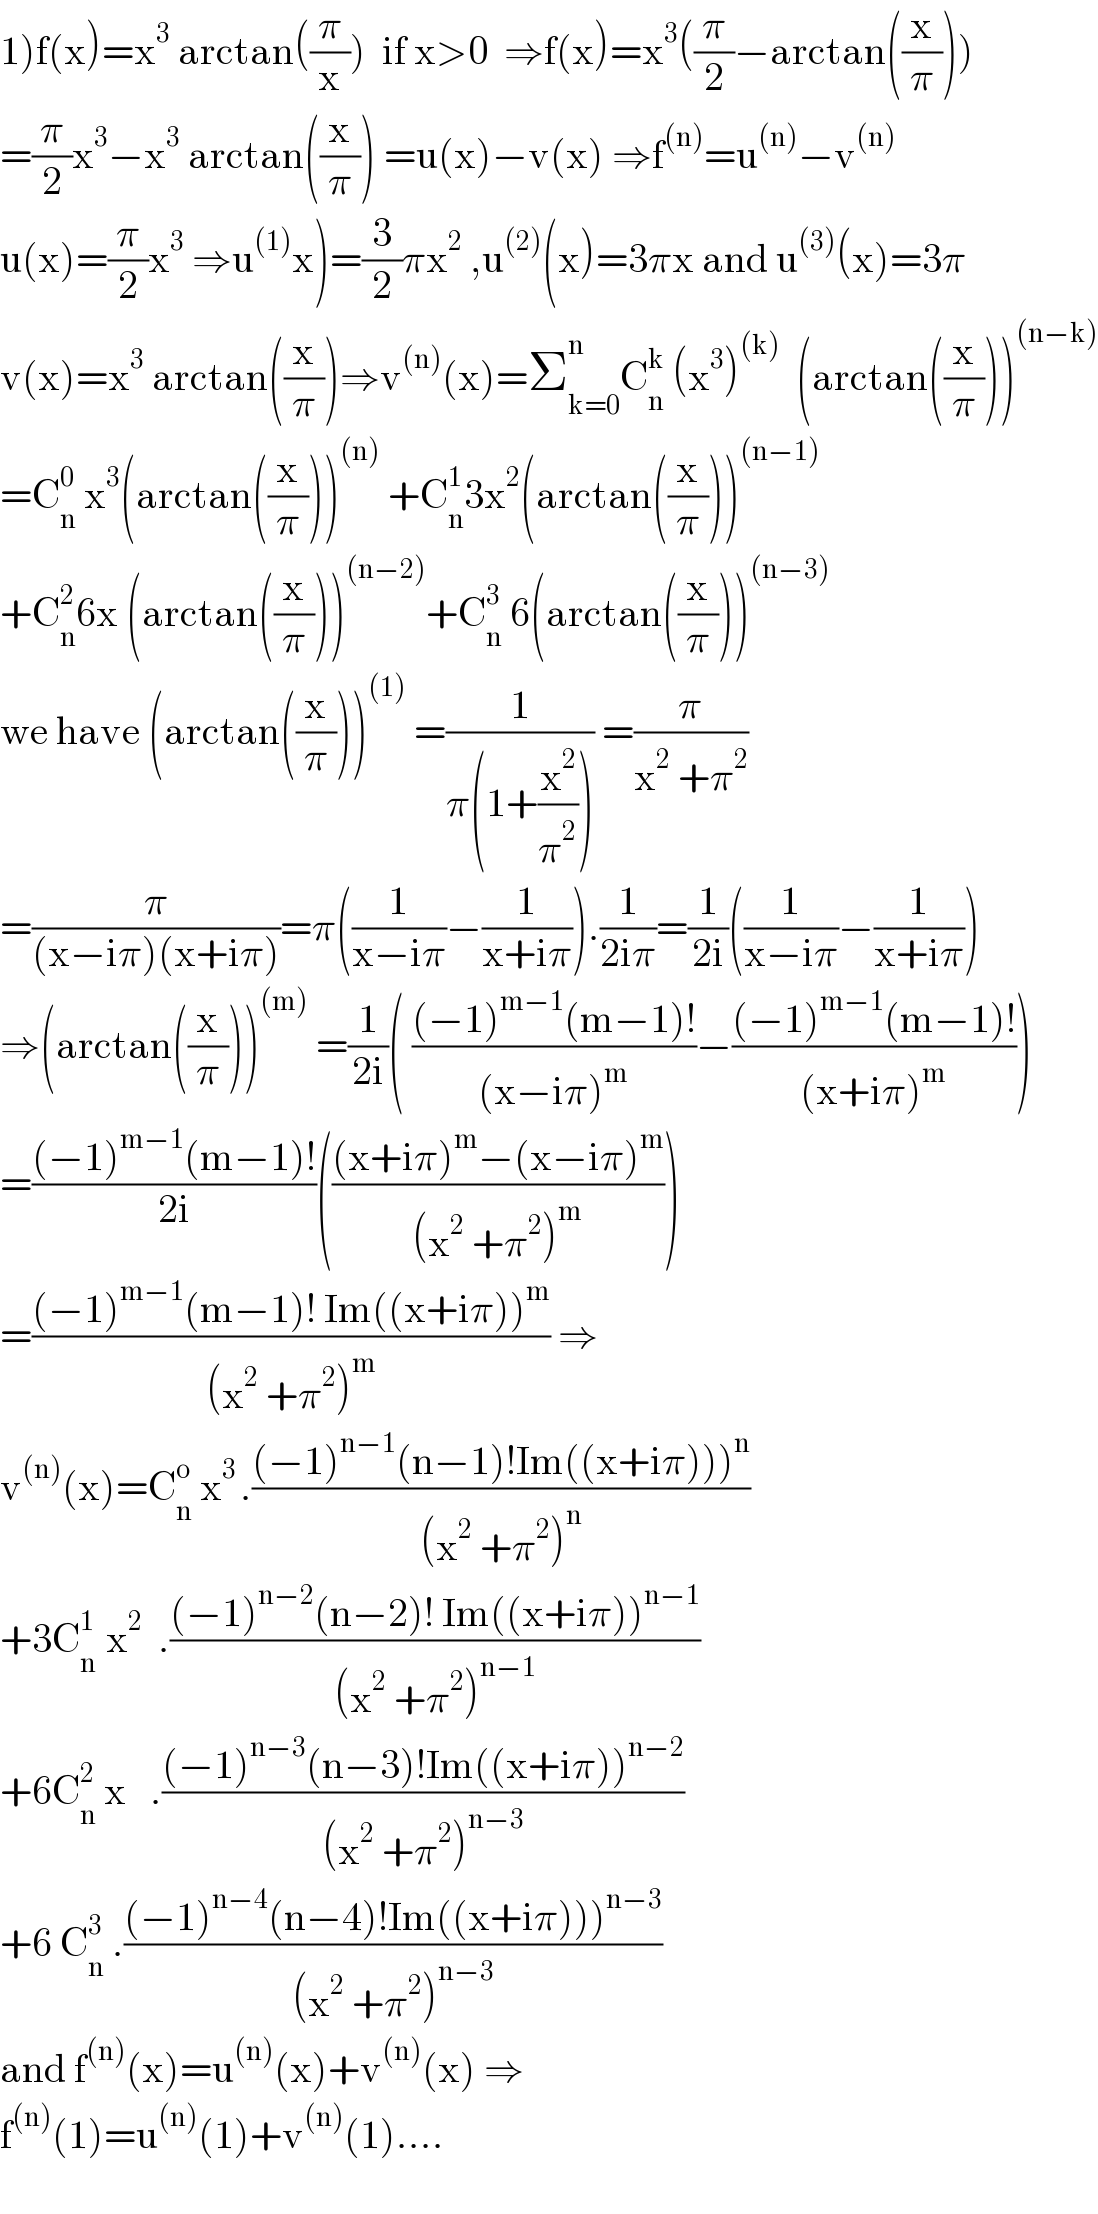 1)f(x)=x^3  arctan((π/x))  if x>0  ⇒f(x)=x^3 ((π/2)−arctan((x/π)))  =(π/2)x^3 −x^3  arctan((x/π)) =u(x)−v(x) ⇒f^((n)) =u^((n)) −v^((n))   u(x)=(π/2)x^3  ⇒u^((1)) x)=(3/2)πx^2  ,u^((2)) (x)=3πx and u^((3)) (x)=3π  v(x)=x^3  arctan((x/π))⇒v^((n)) (x)=Σ_(k=0) ^n C_n ^k  (x^3 )^((k))   (arctan((x/π)))^((n−k))   =C_n ^0  x^3 (arctan((x/π)))^((n))  +C_n ^1 3x^2 (arctan((x/π)))^((n−1))   +C_n ^2 6x (arctan((x/π)))^((n−2)) +C_n ^3  6(arctan((x/π)))^((n−3))   we have (arctan((x/π)))^((1))  =(1/(π(1+(x^2 /π^2 )))) =(π/(x^2  +π^2 ))  =(π/((x−iπ)(x+iπ)))=π((1/(x−iπ))−(1/(x+iπ))).(1/(2iπ))=(1/(2i))((1/(x−iπ))−(1/(x+iπ)))  ⇒(arctan((x/π)))^((m))  =(1/(2i))( (((−1)^(m−1) (m−1)!)/((x−iπ)^m ))−(((−1)^(m−1) (m−1)!)/((x+iπ)^m )))  =(((−1)^(m−1) (m−1)!)/(2i))((((x+iπ)^m −(x−iπ)^m )/((x^2  +π^2 )^m )))  =(((−1)^(m−1) (m−1)! Im((x+iπ))^m )/((x^2  +π^2 )^m )) ⇒  v^((n)) (x)=C_n ^o  x^(3 ) .(((−1)^(n−1) (n−1)!Im((x+iπ)))^n )/((x^2  +π^2 )^n ))  +3C_n ^(1 )  x^2   .(((−1)^(n−2) (n−2)! Im((x+iπ))^(n−1) )/((x^2  +π^2 )^(n−1) ))  +6C_n ^2  x   .(((−1)^(n−3) (n−3)!Im((x+iπ))^(n−2) )/((x^2  +π^2 )^(n−3) ))  +6 C_n ^3  .(((−1)^(n−4) (n−4)!Im((x+iπ)))^(n−3) )/((x^2  +π^2 )^(n−3) ))  and f^((n)) (x)=u^((n)) (x)+v^((n)) (x) ⇒  f^((n)) (1)=u^((n)) (1)+v^((n)) (1)....    